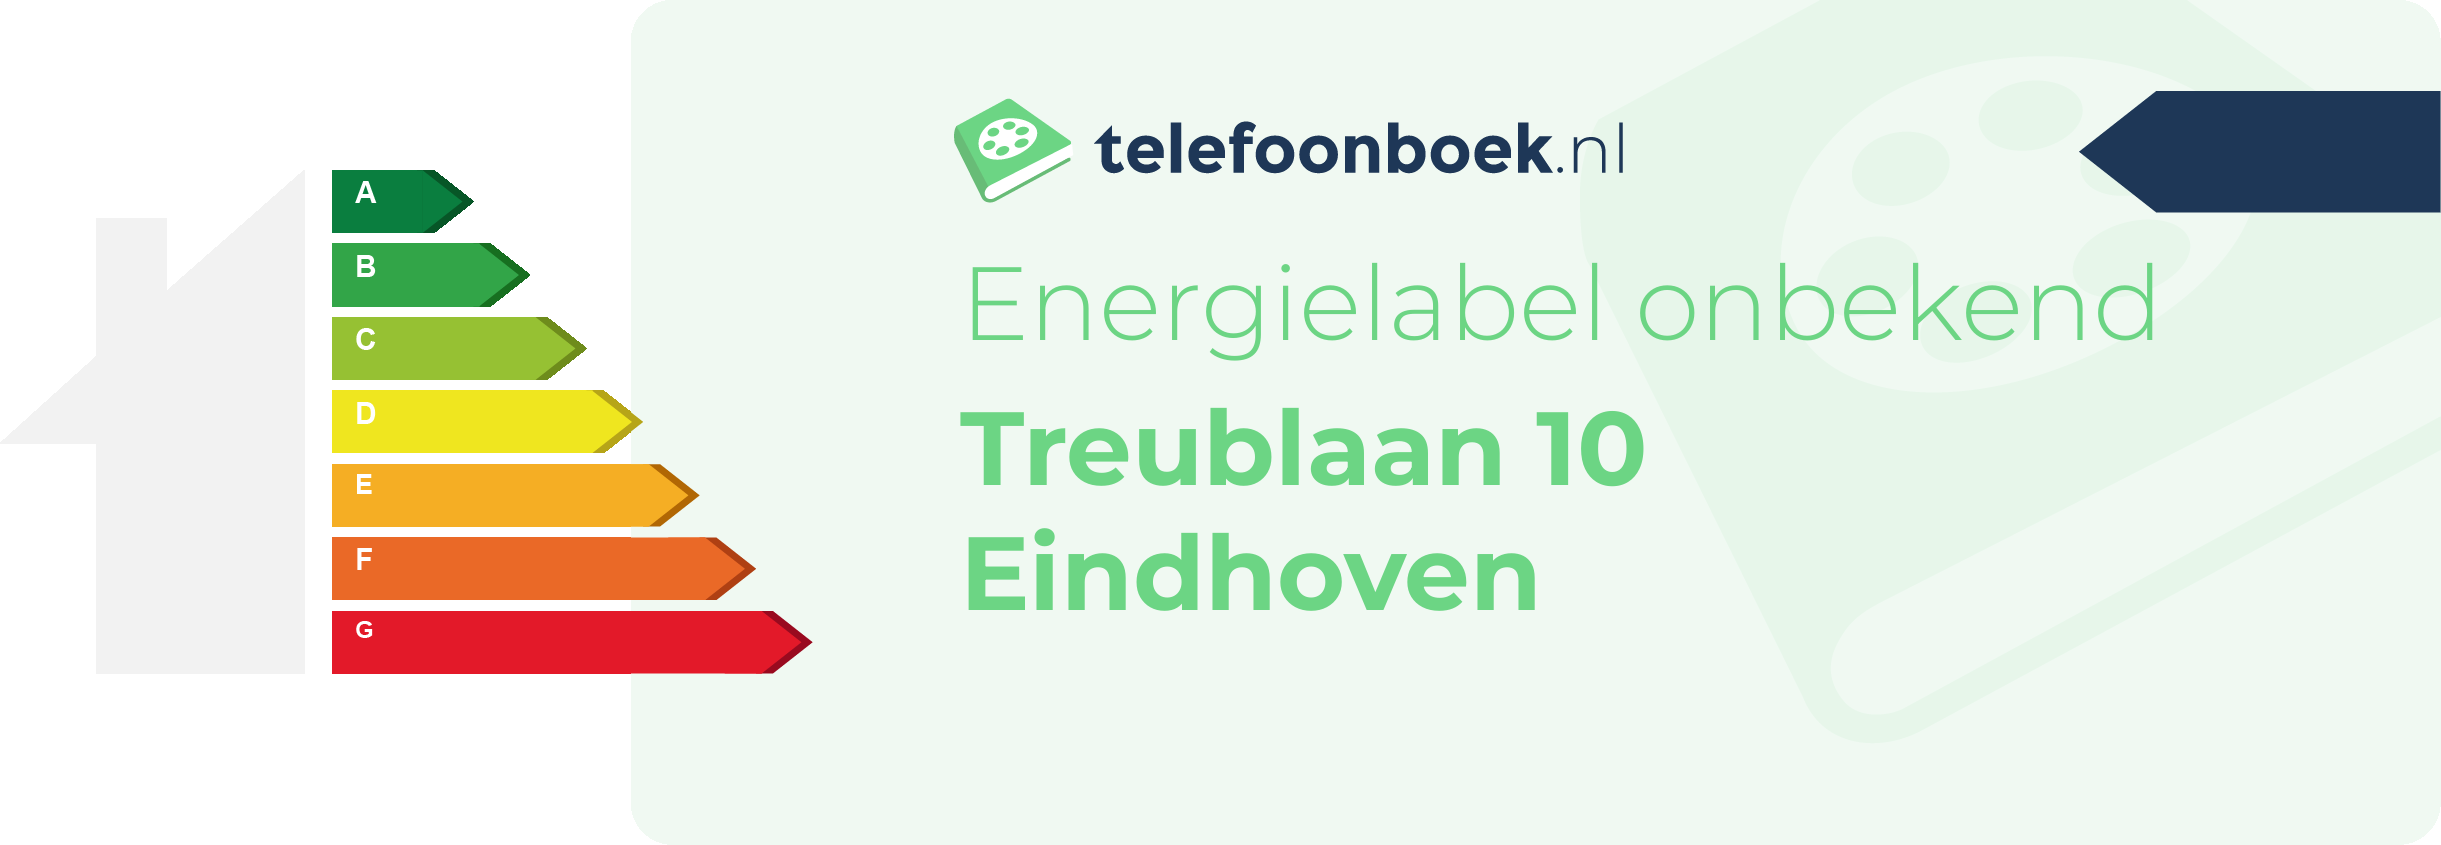 Energielabel Treublaan 10 Eindhoven